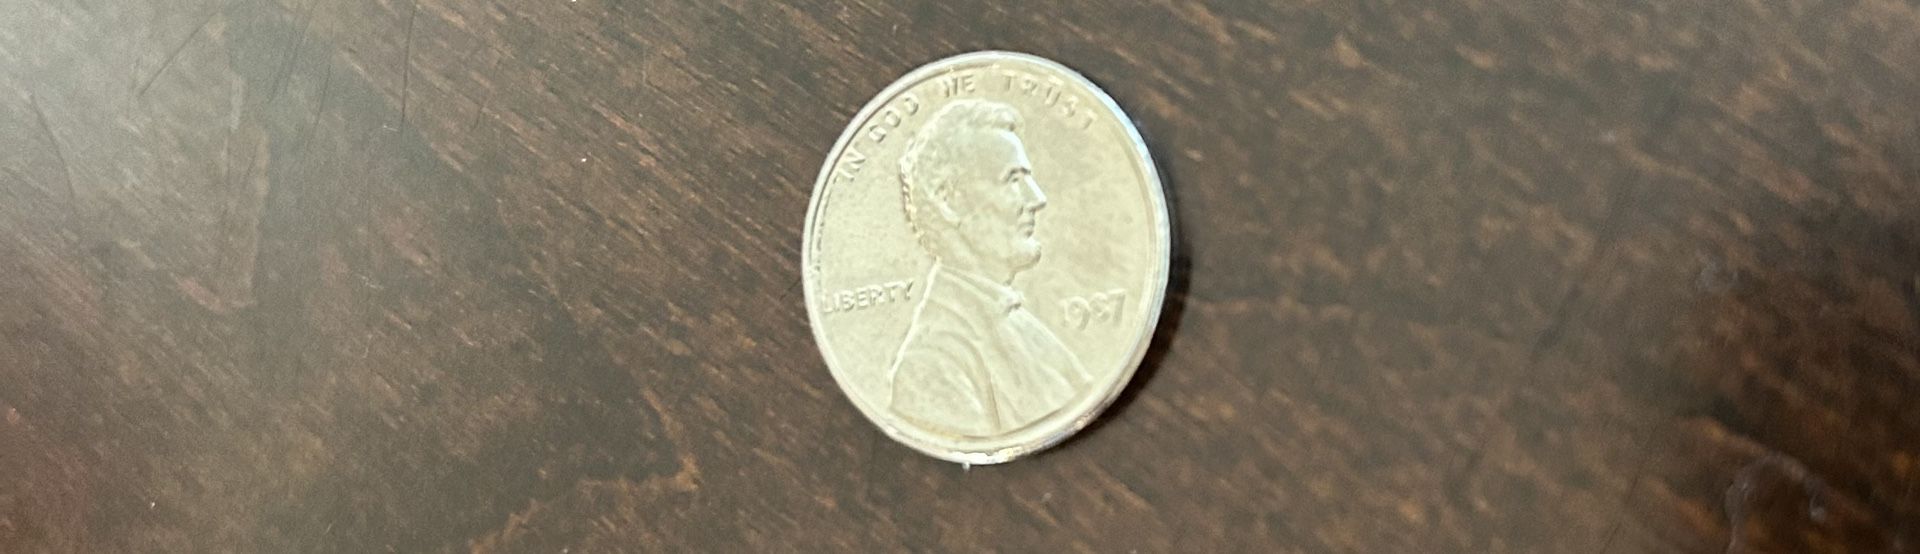 Rare Silver 1987 Penny 